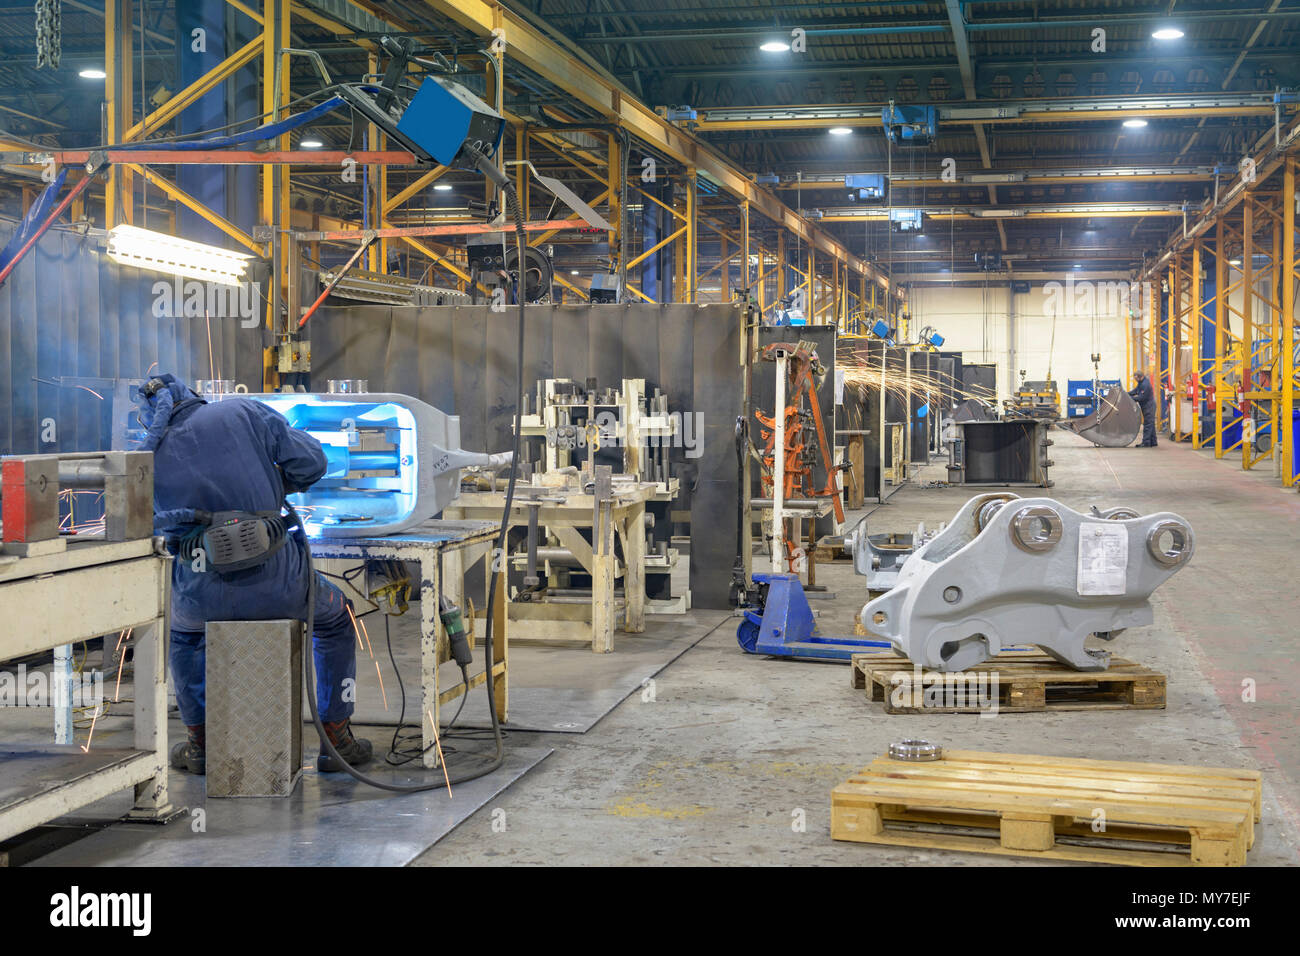 Weitwinkelaufnahme der Maschinenfabrik mit Schweißer im Vordergrund arbeiten Stockfoto